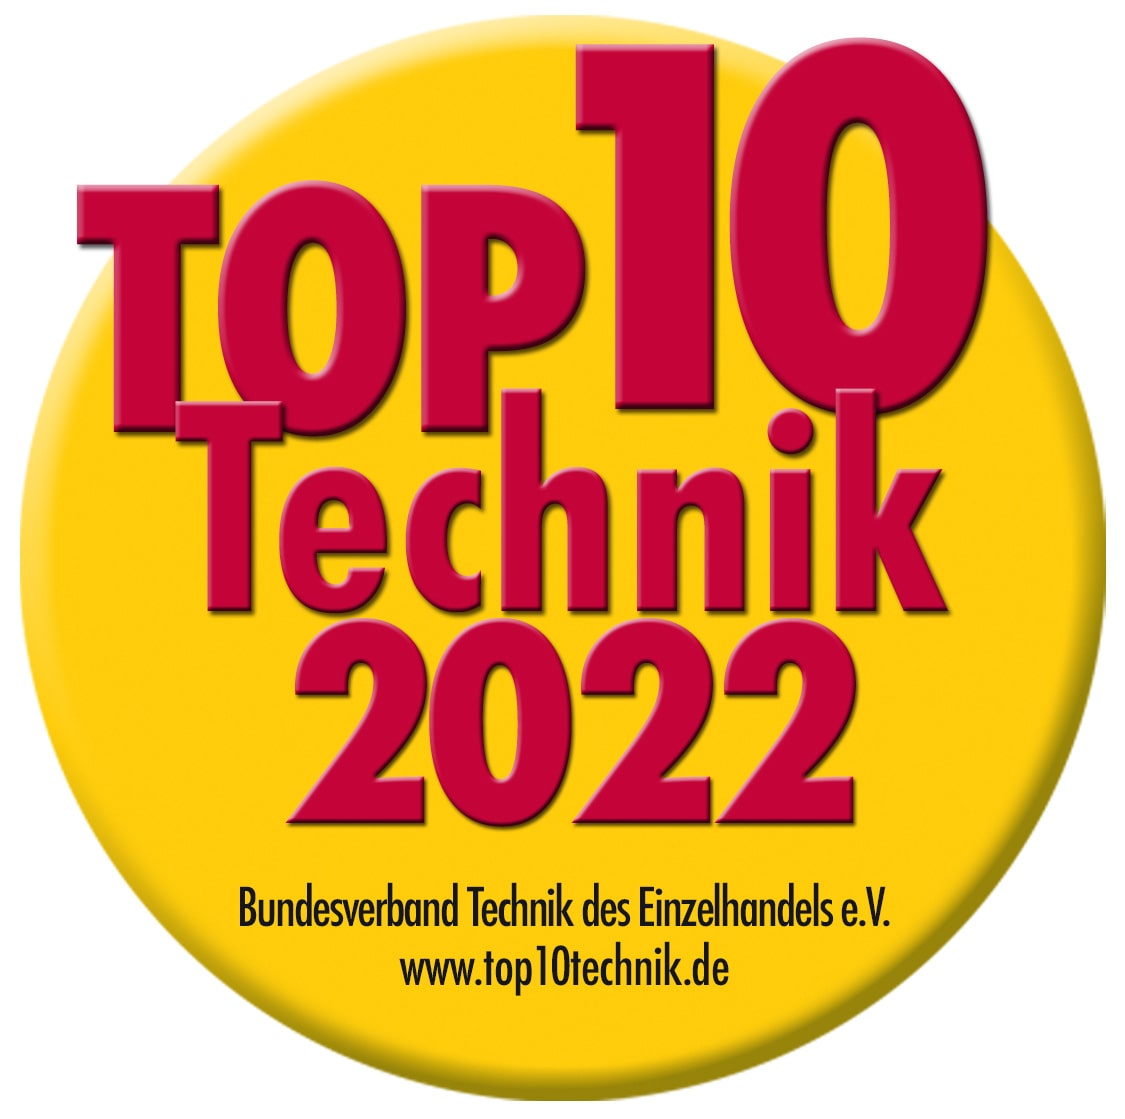 Top 10 Technik 2022